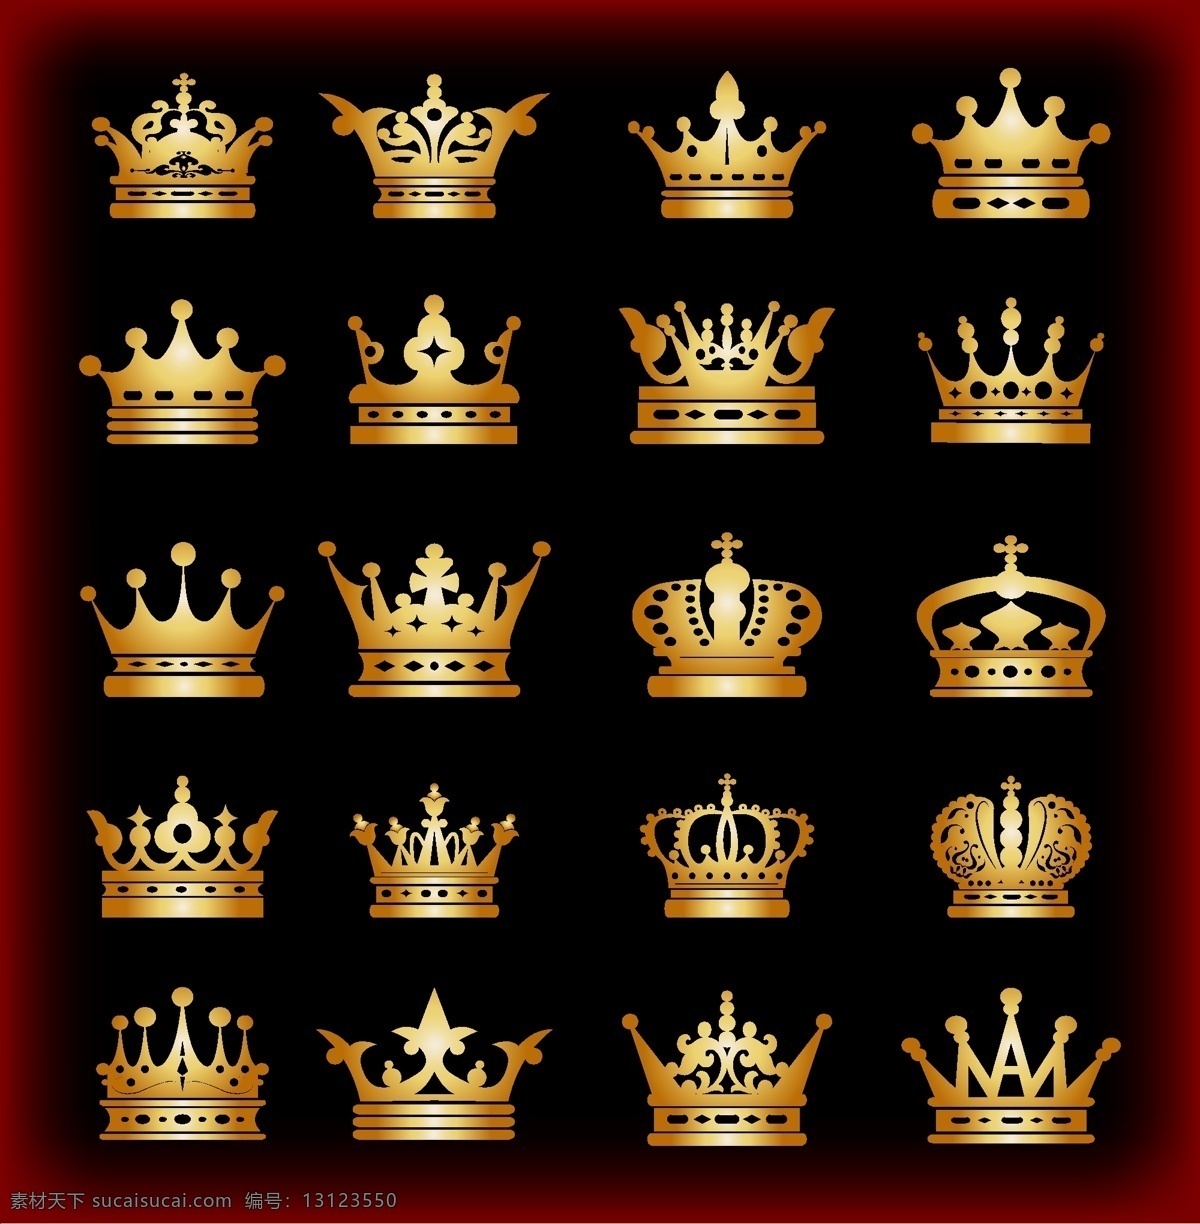 皇冠 欧式皇冠 头盔 权力 金黄色皇冠 王冠 皇家 皇族 矢量 标志图标 网页小图标 黑色